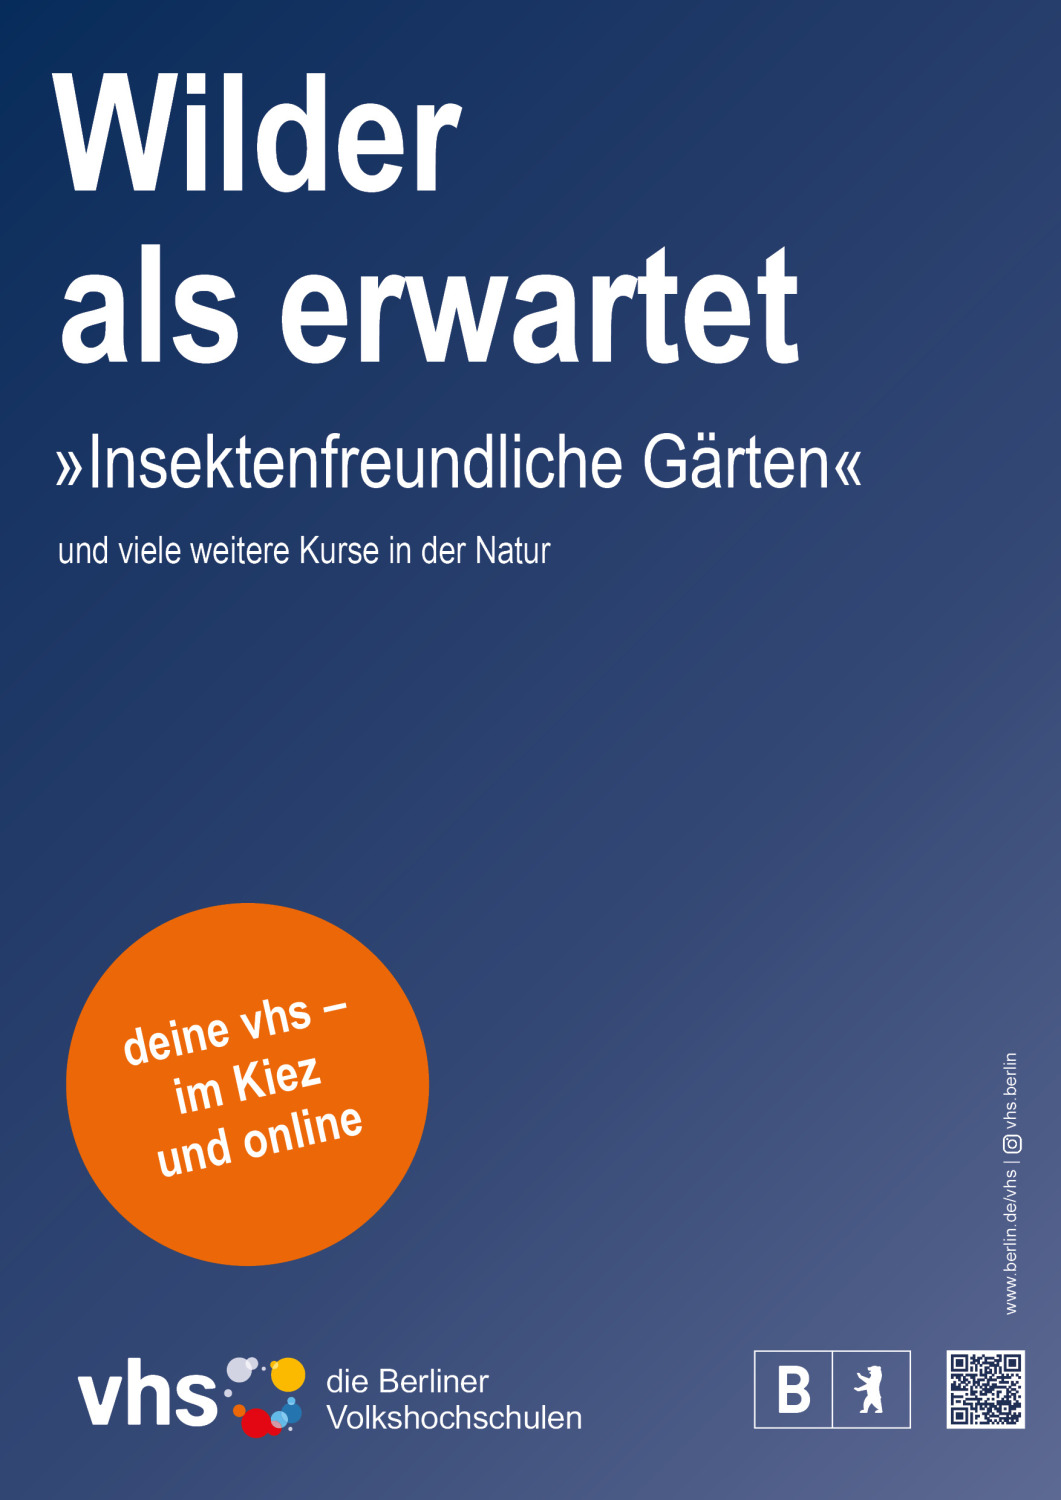 Plakat der Berliner vhs-Kamapage ab 2023 - Wilder als erwartet 